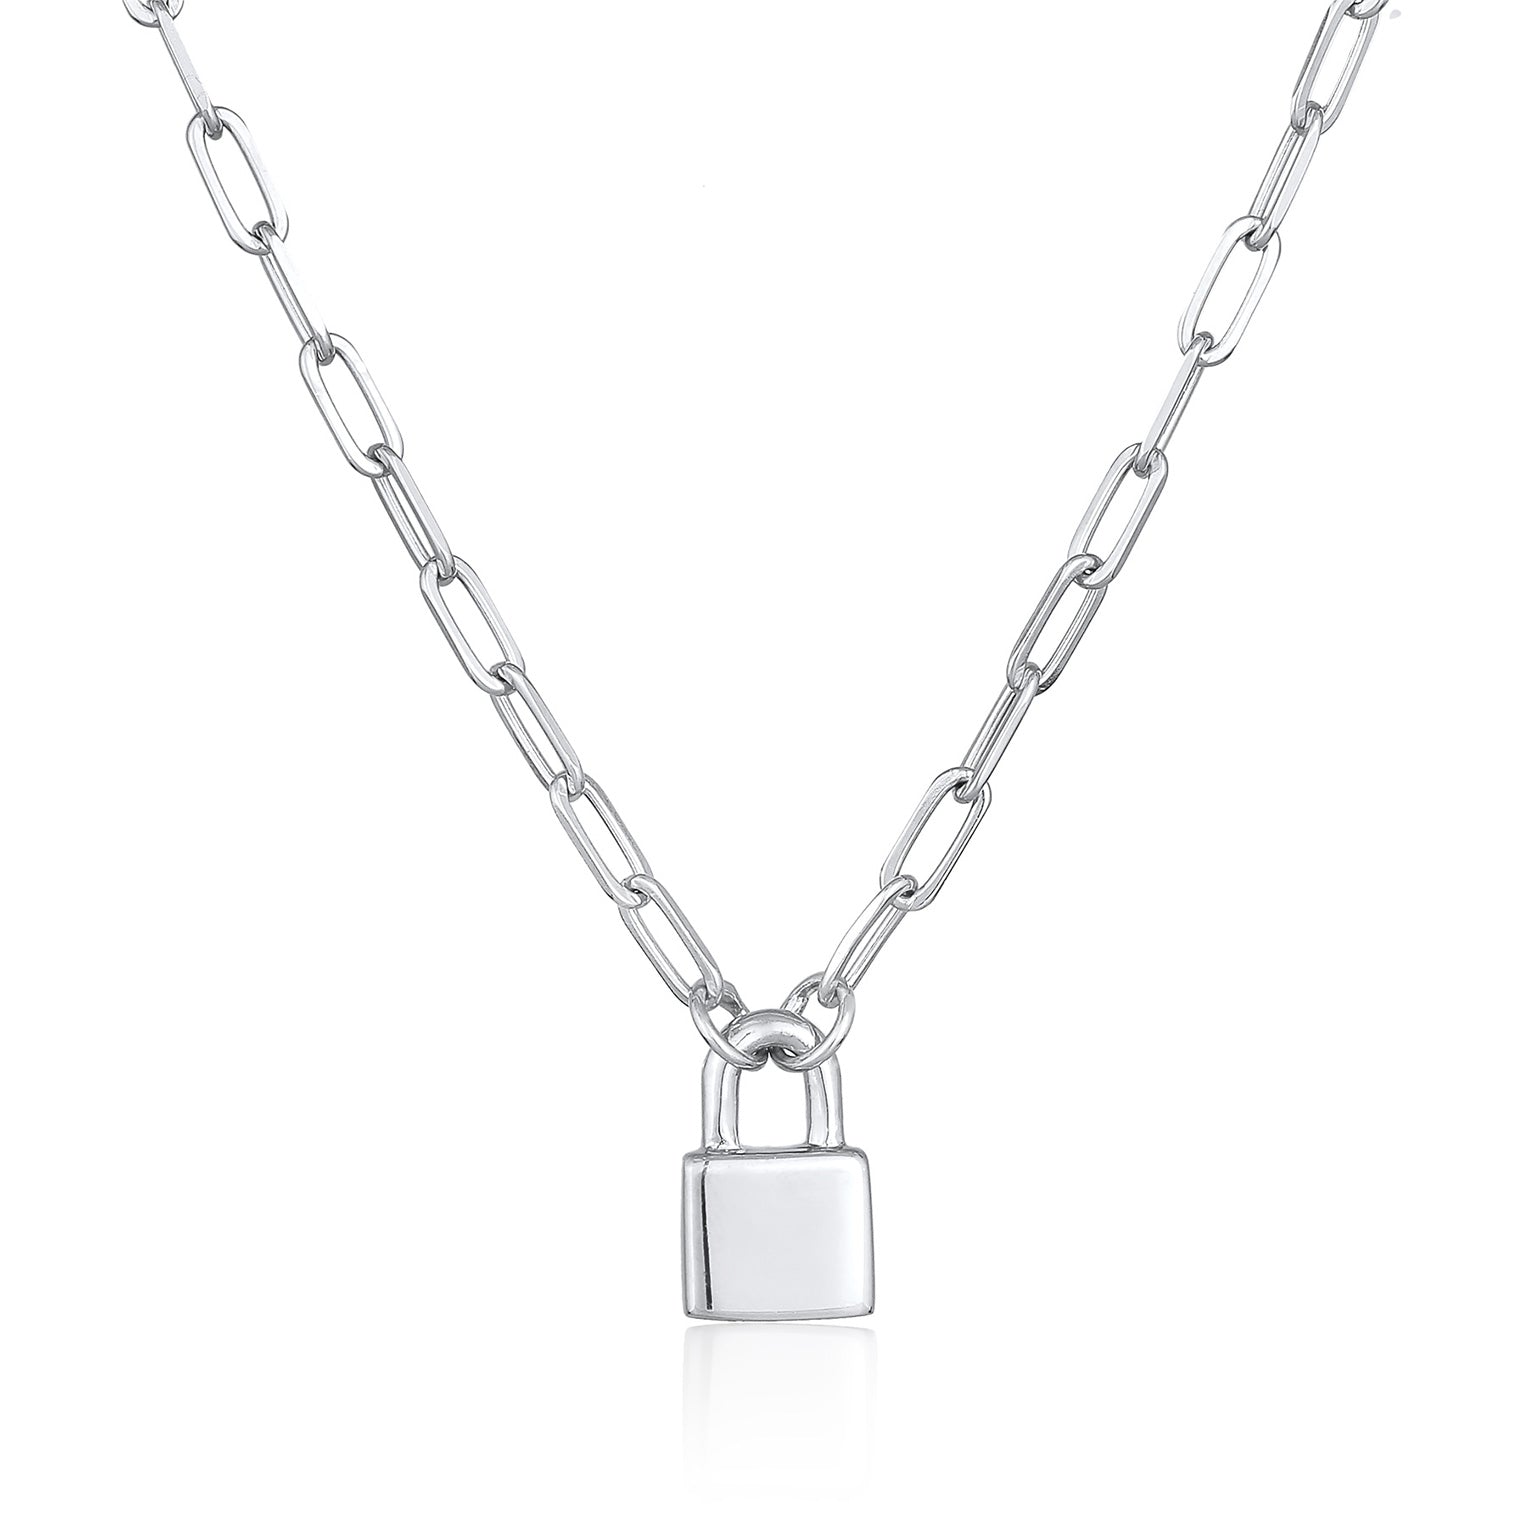 Liebe Jewelry 925er Silber Elli – Unisex rhodiniert Schloss Gliederkette